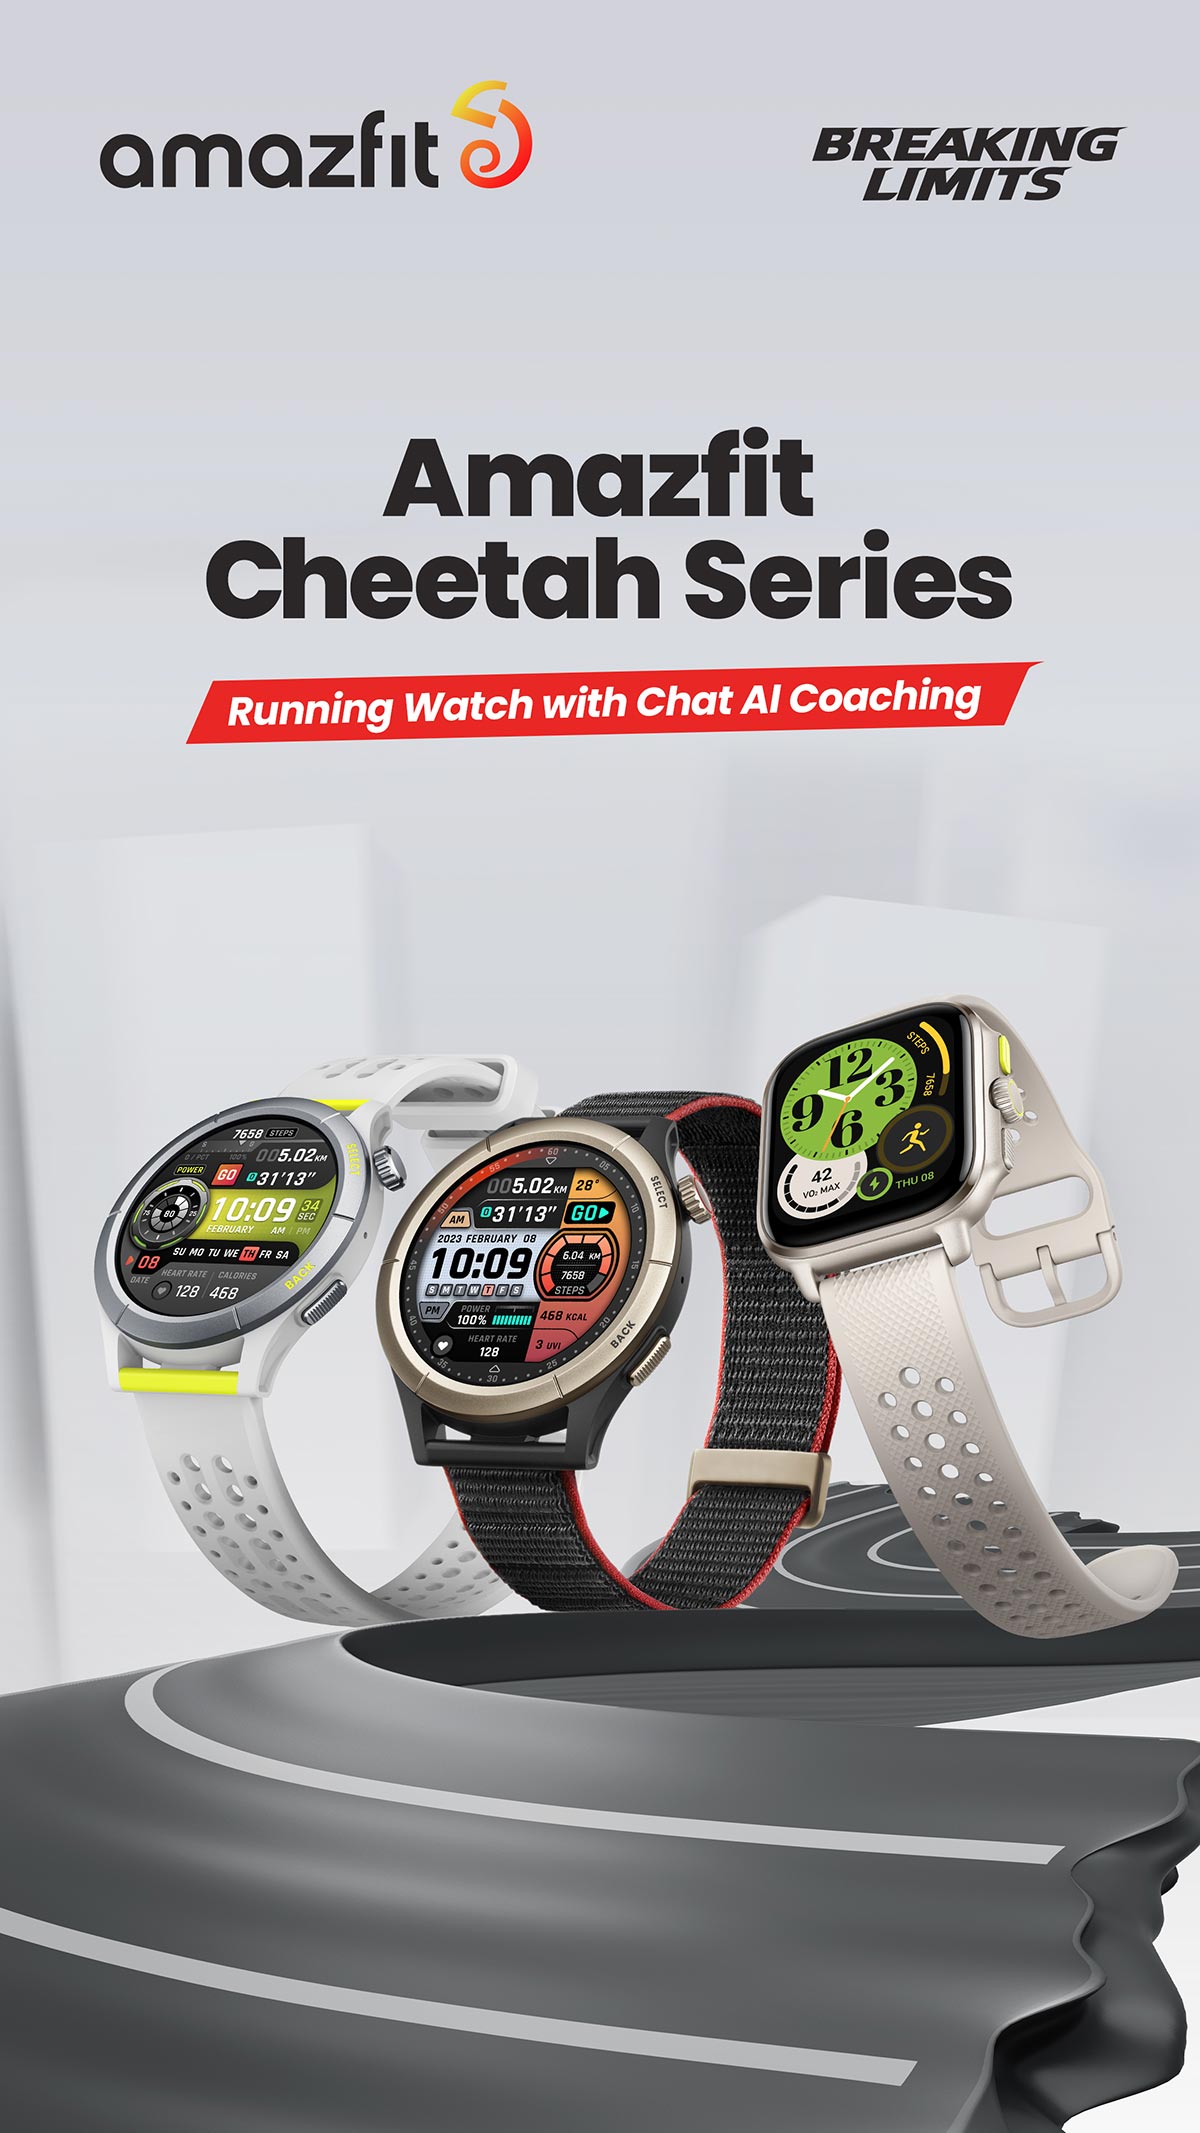 Die Running Watch der Amazfit Cheetah Serie. ©Amazfit